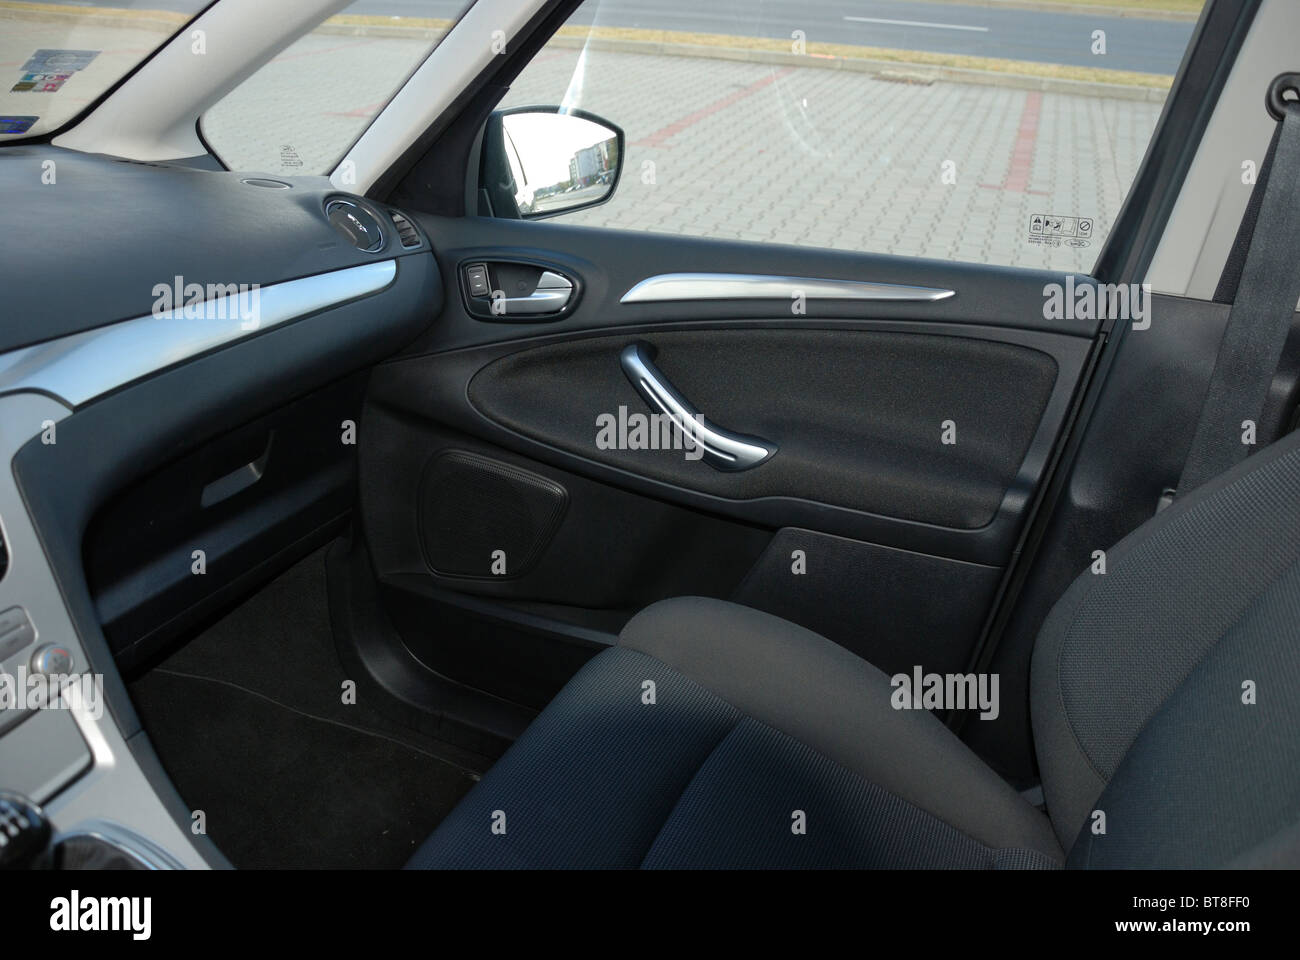 Ford S-MAX 2.0 TDCI - 2006 - nero metallizzato - cinque porte (5D) - Popolare tedesco MPV (minivan) - interno, cabina, sedile passeggero Foto Stock